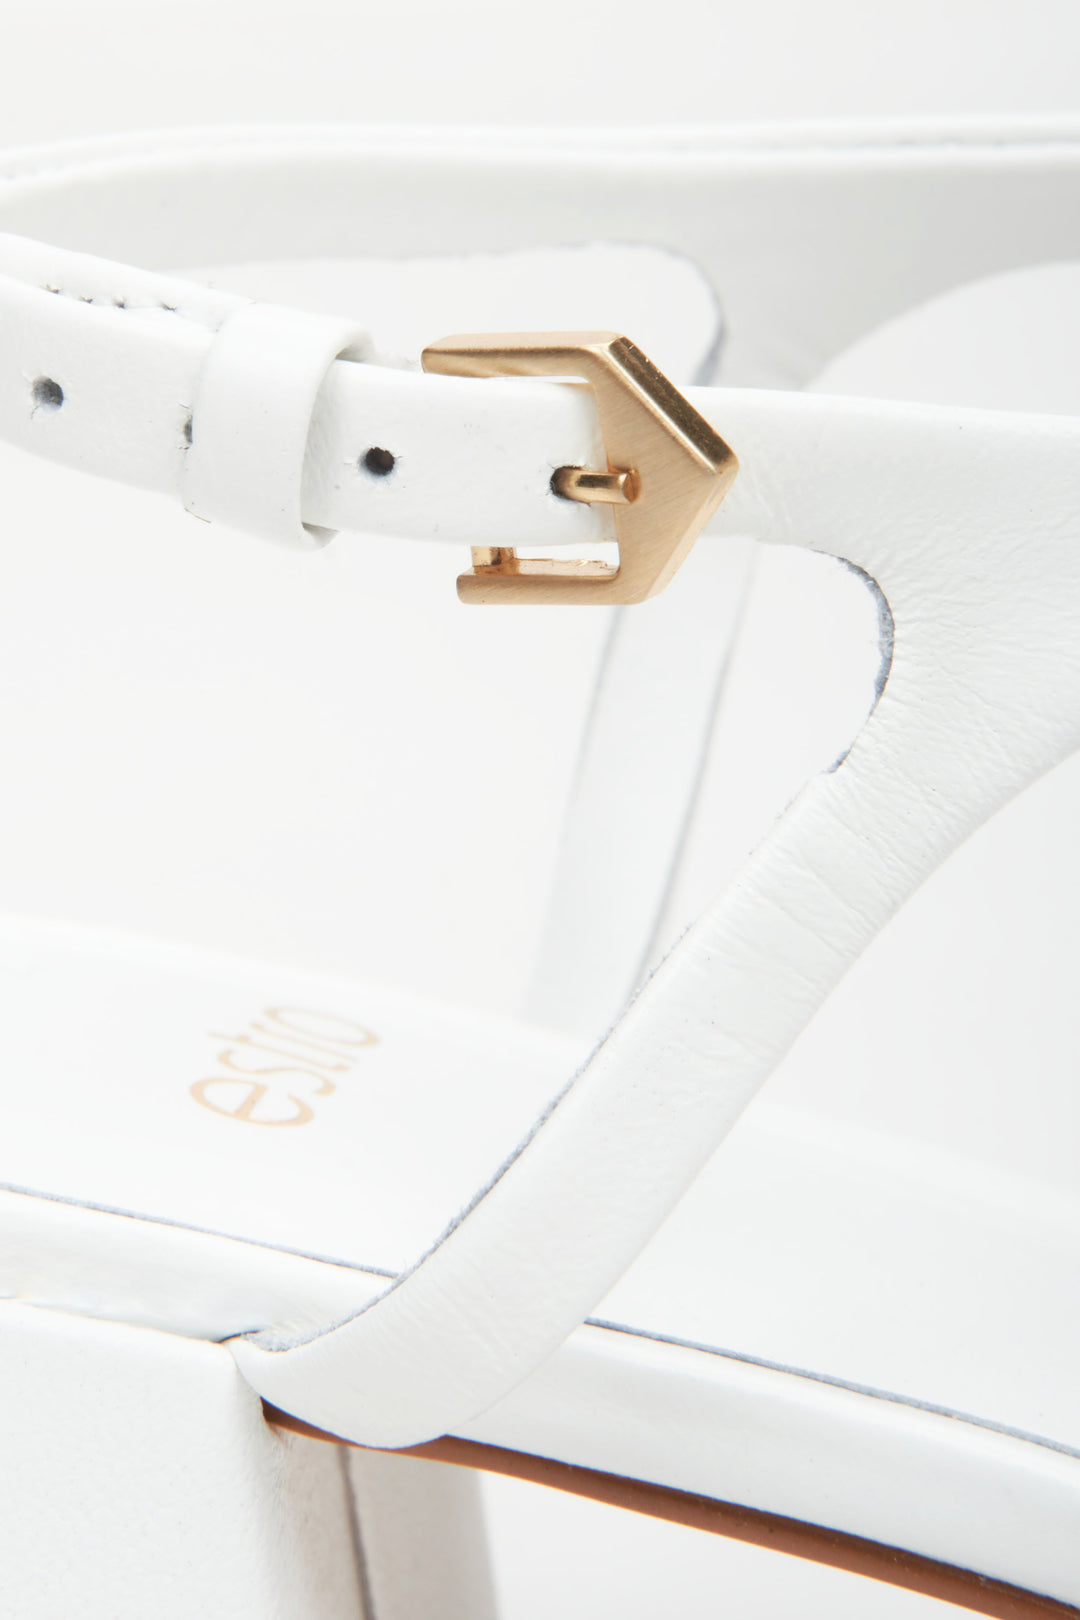 Sandały damskie ze skóry naturalnej w kolorze białym marki Estro - zbliżenie na detale.